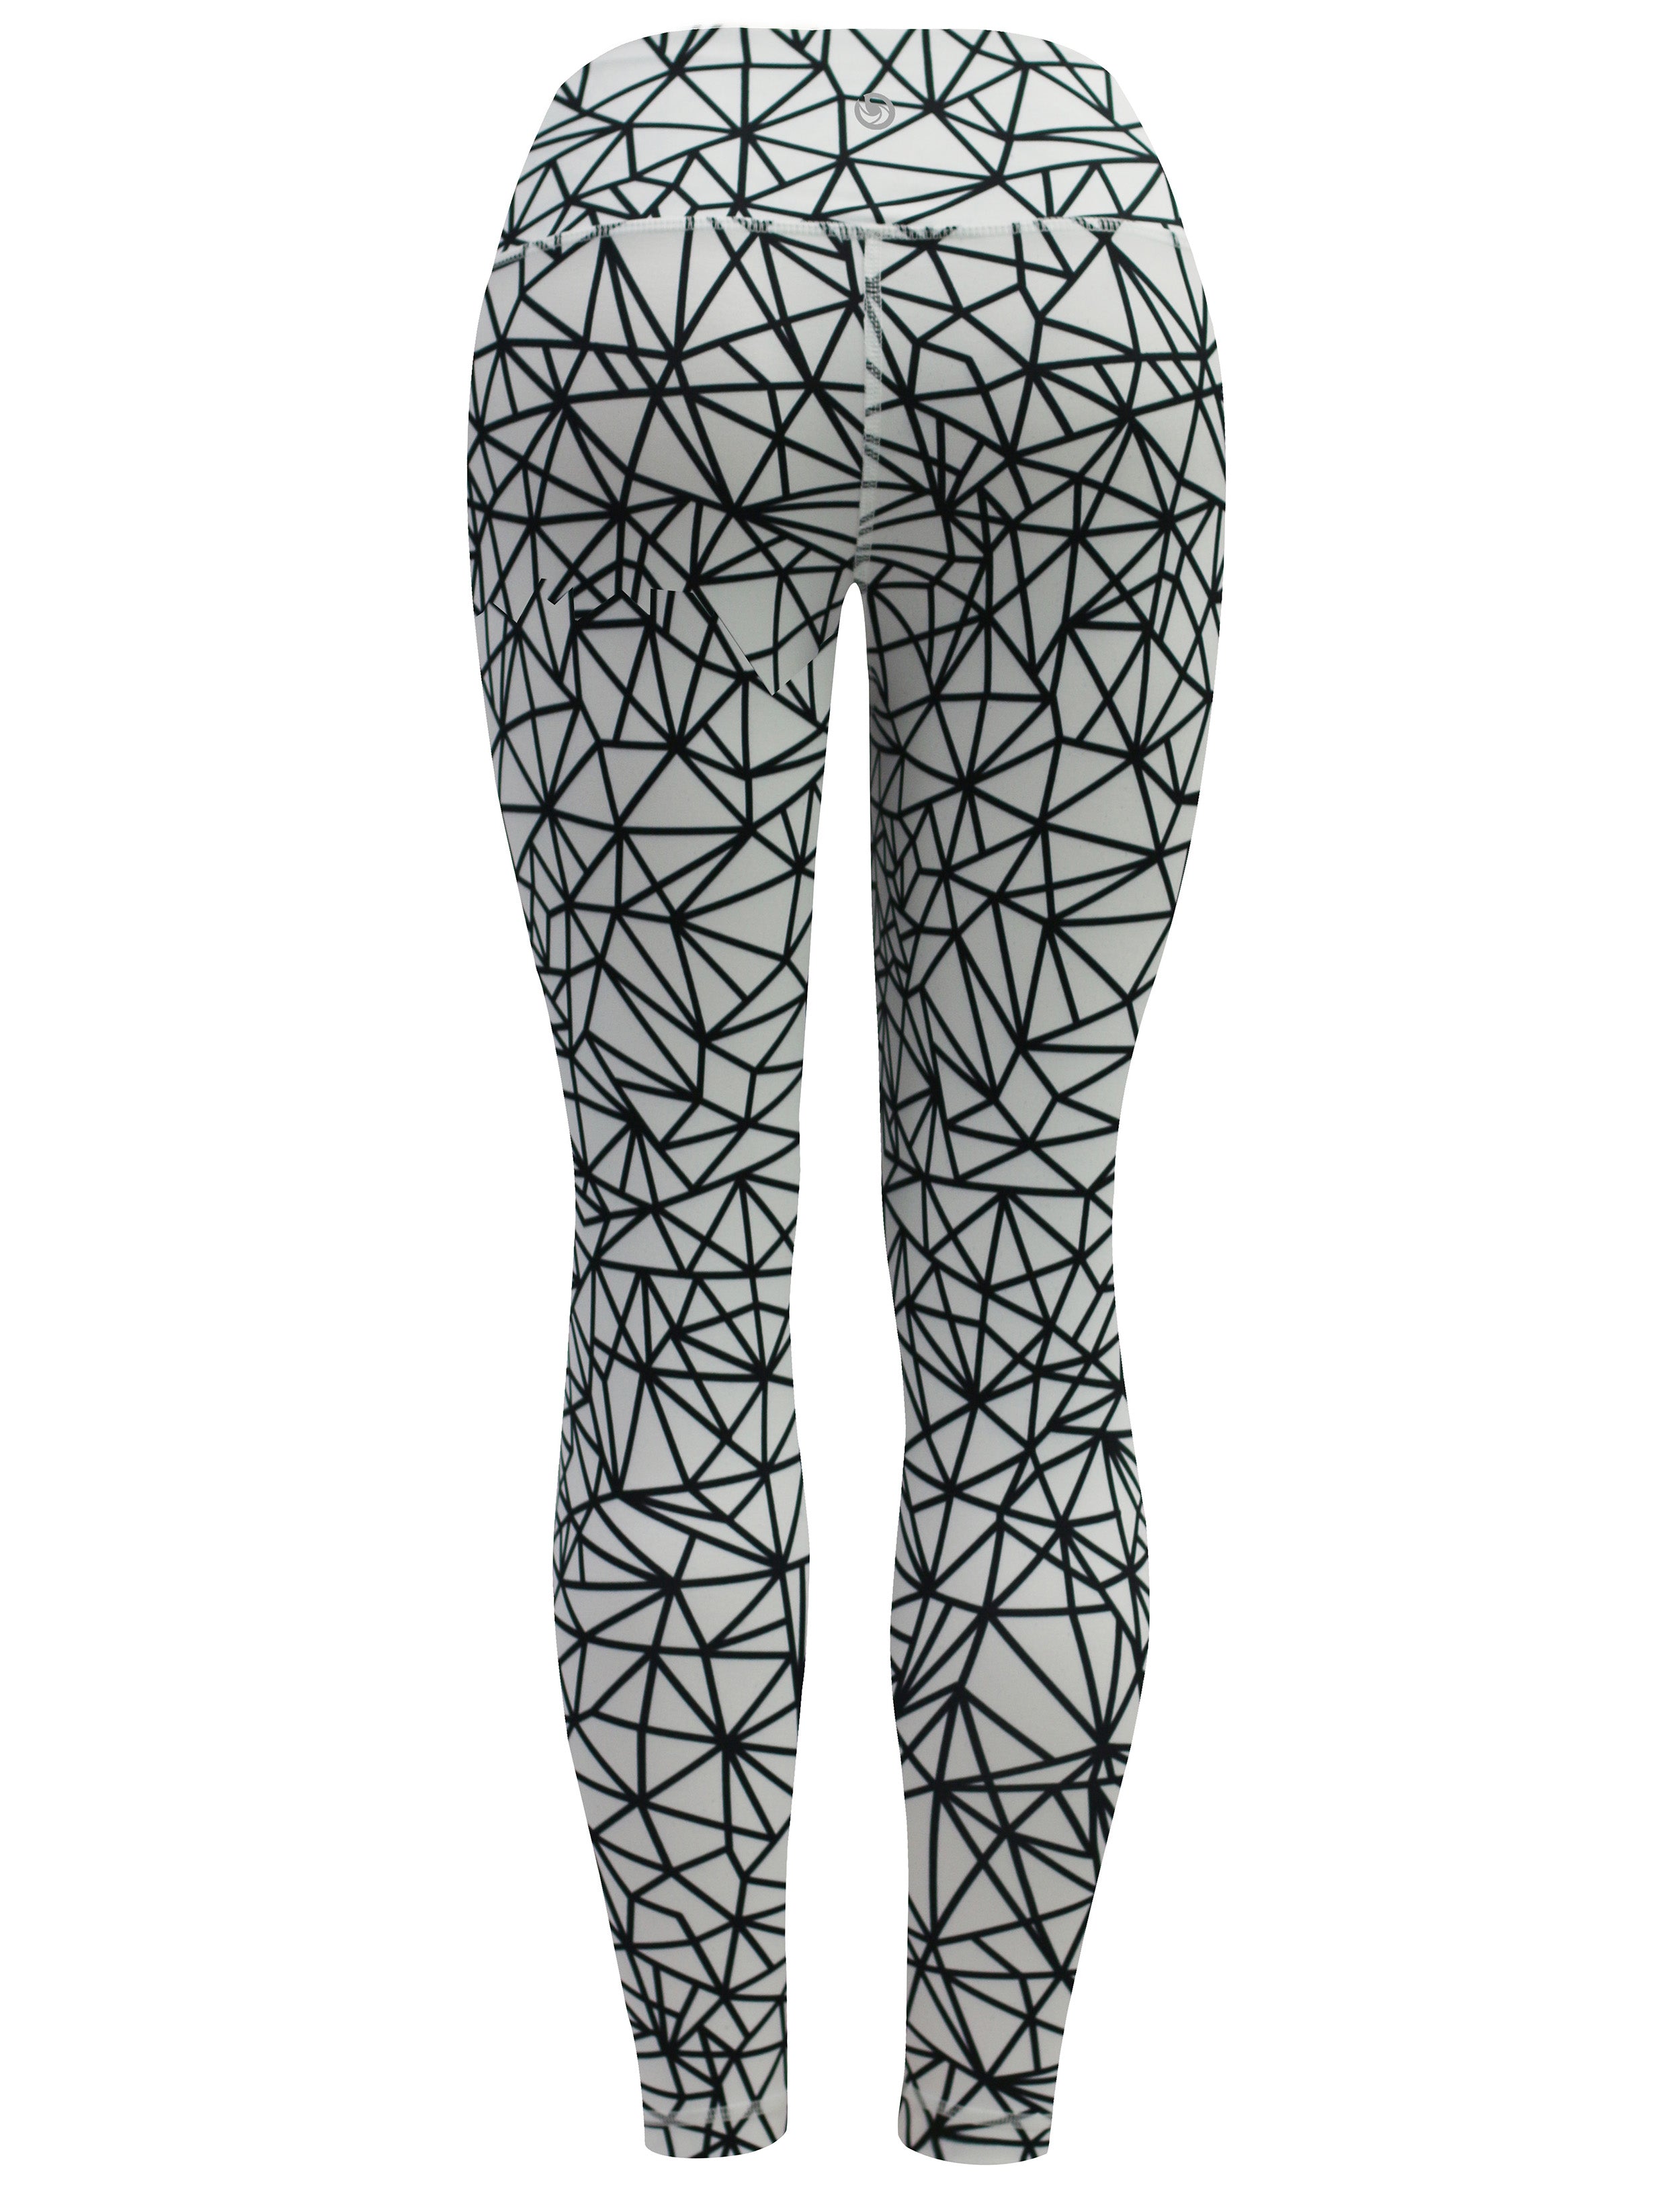 26" Printed Yoga Pants WHITESPIDER